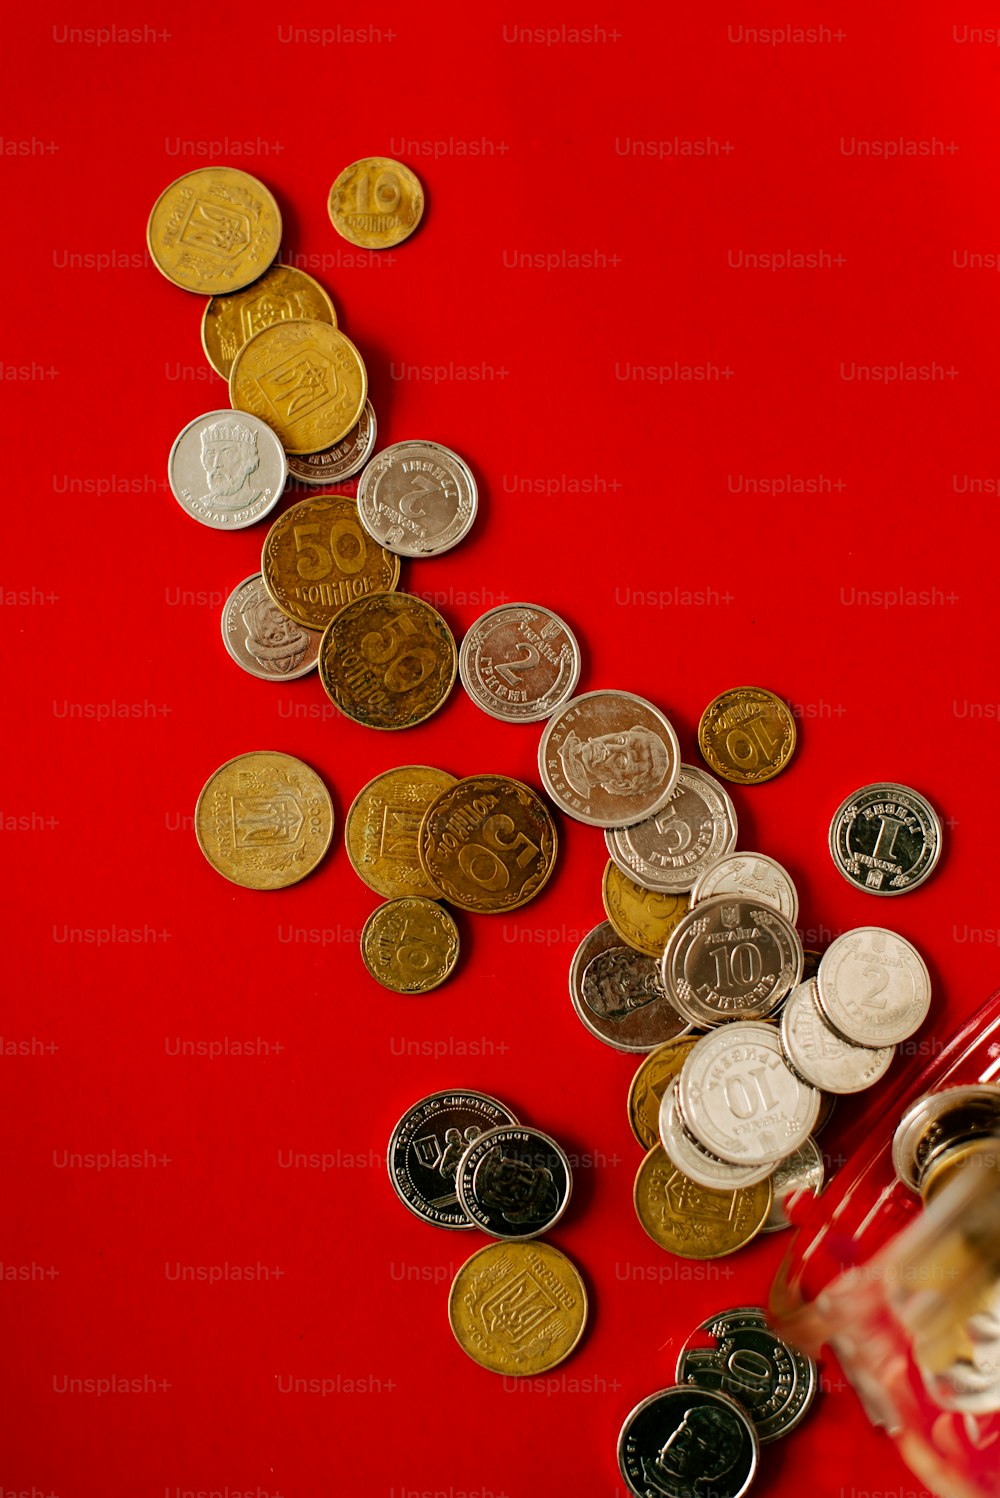 たくさんのコインでいっぱいの赤い袋